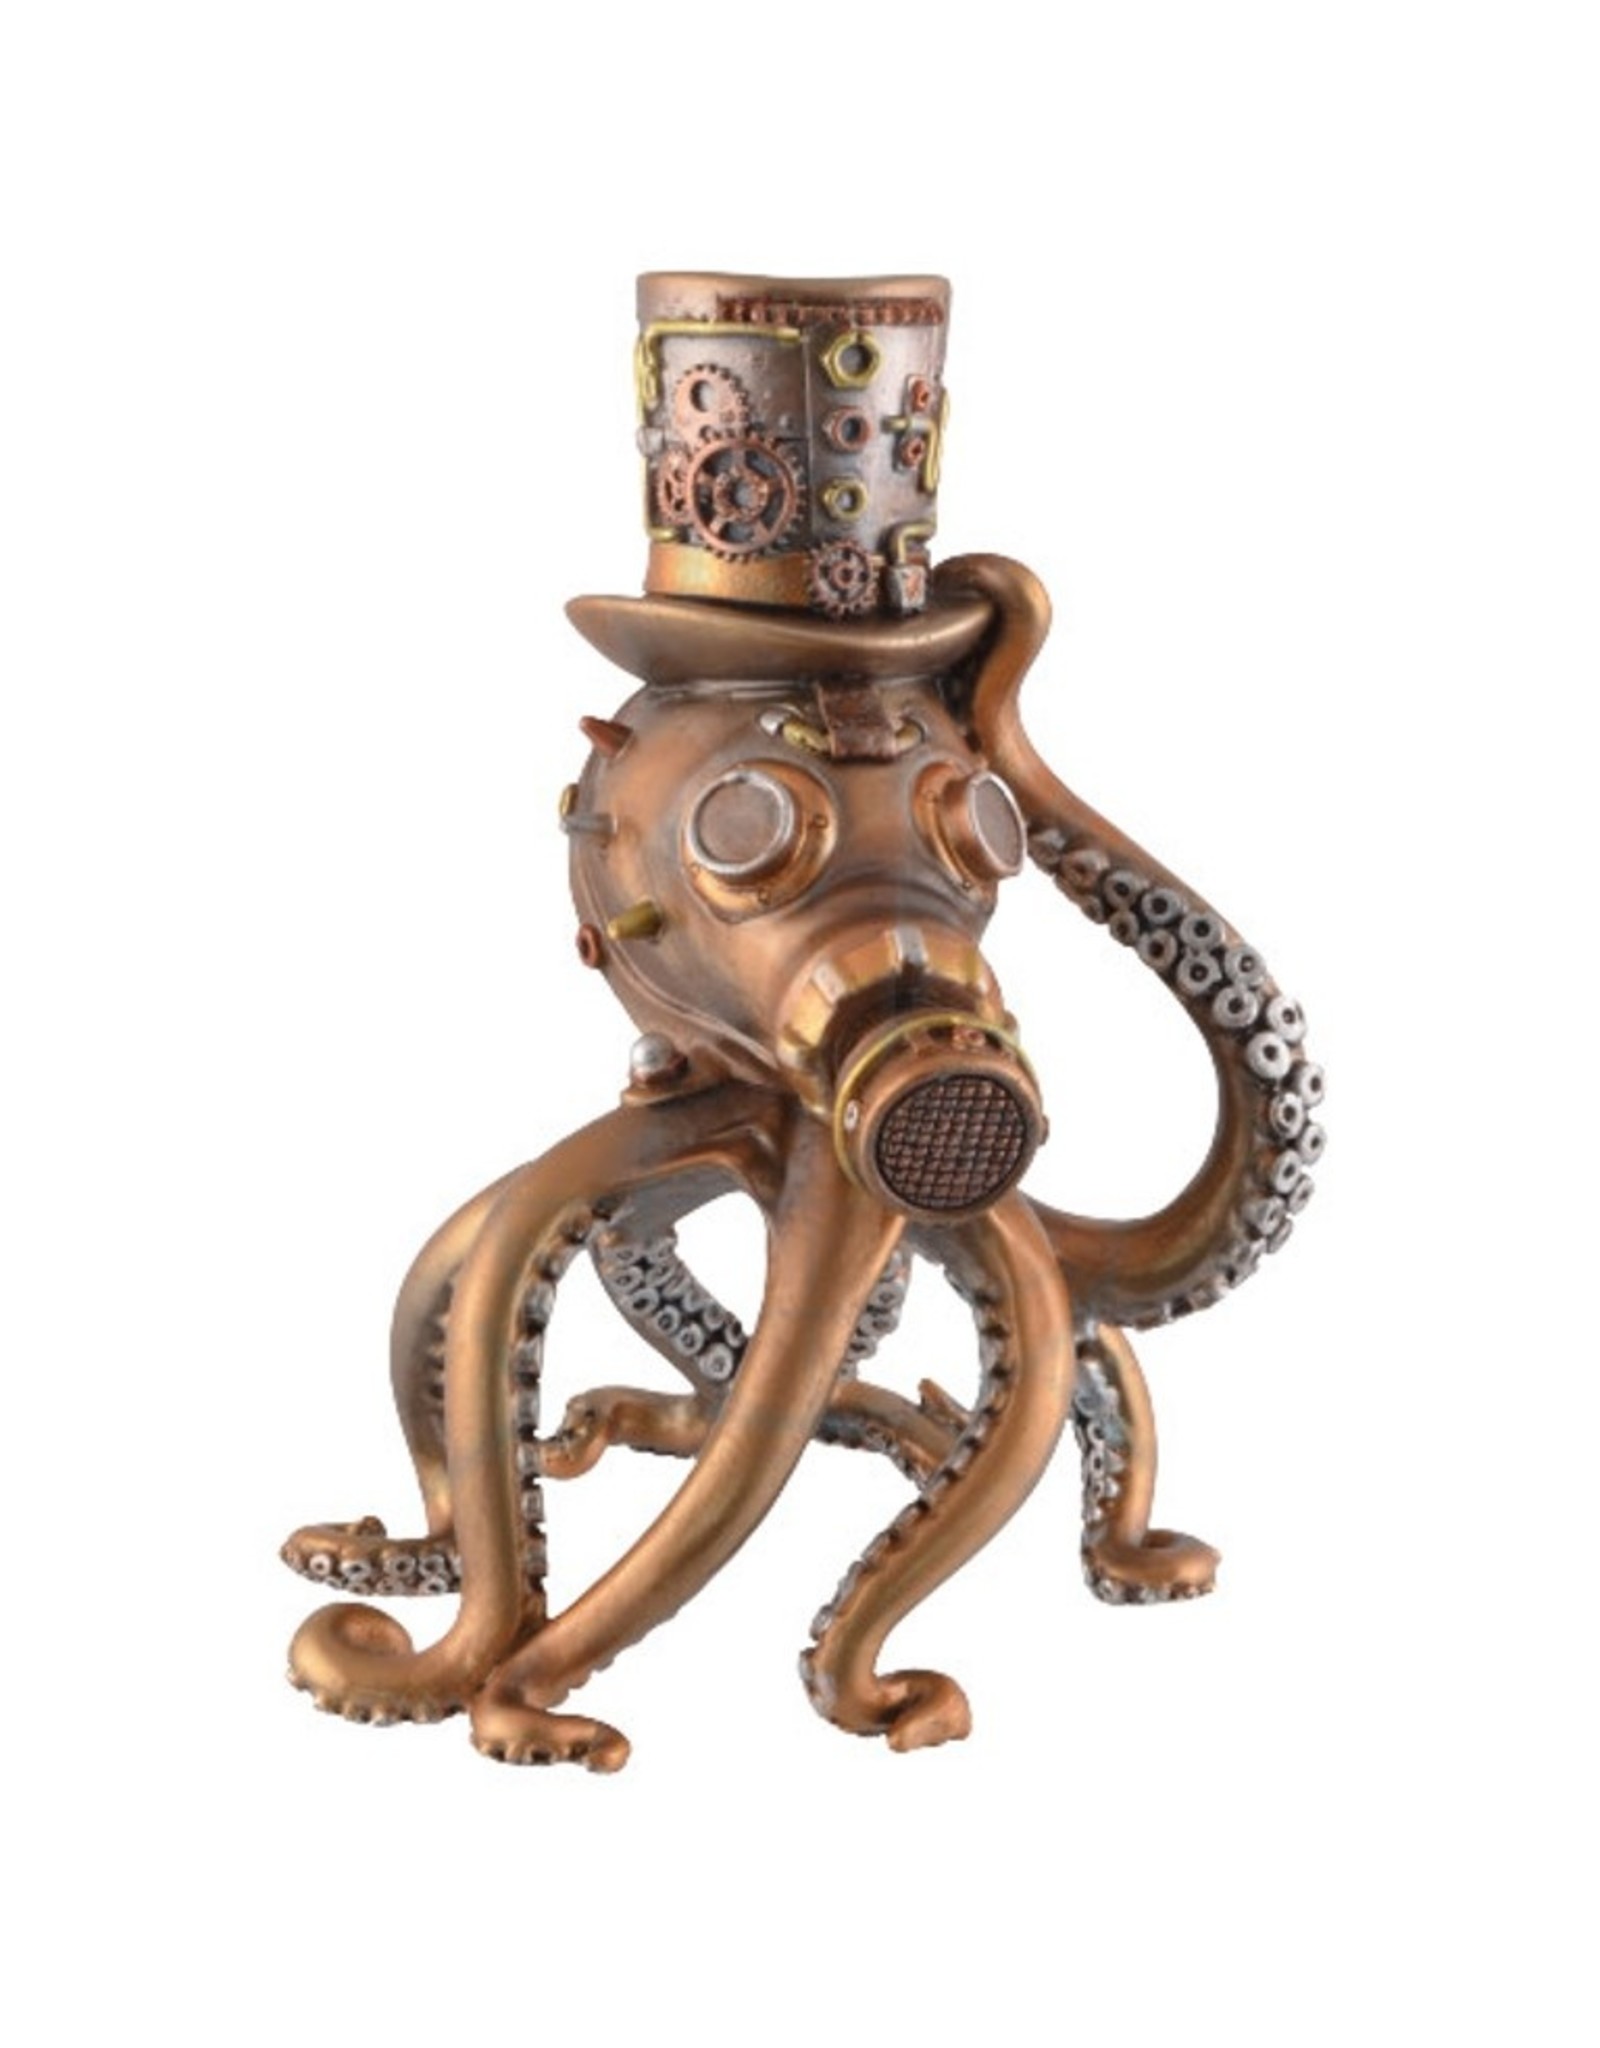 Trukado Giftware & Lifestyle - Kraken Steampunk Octopus met Gasmasker